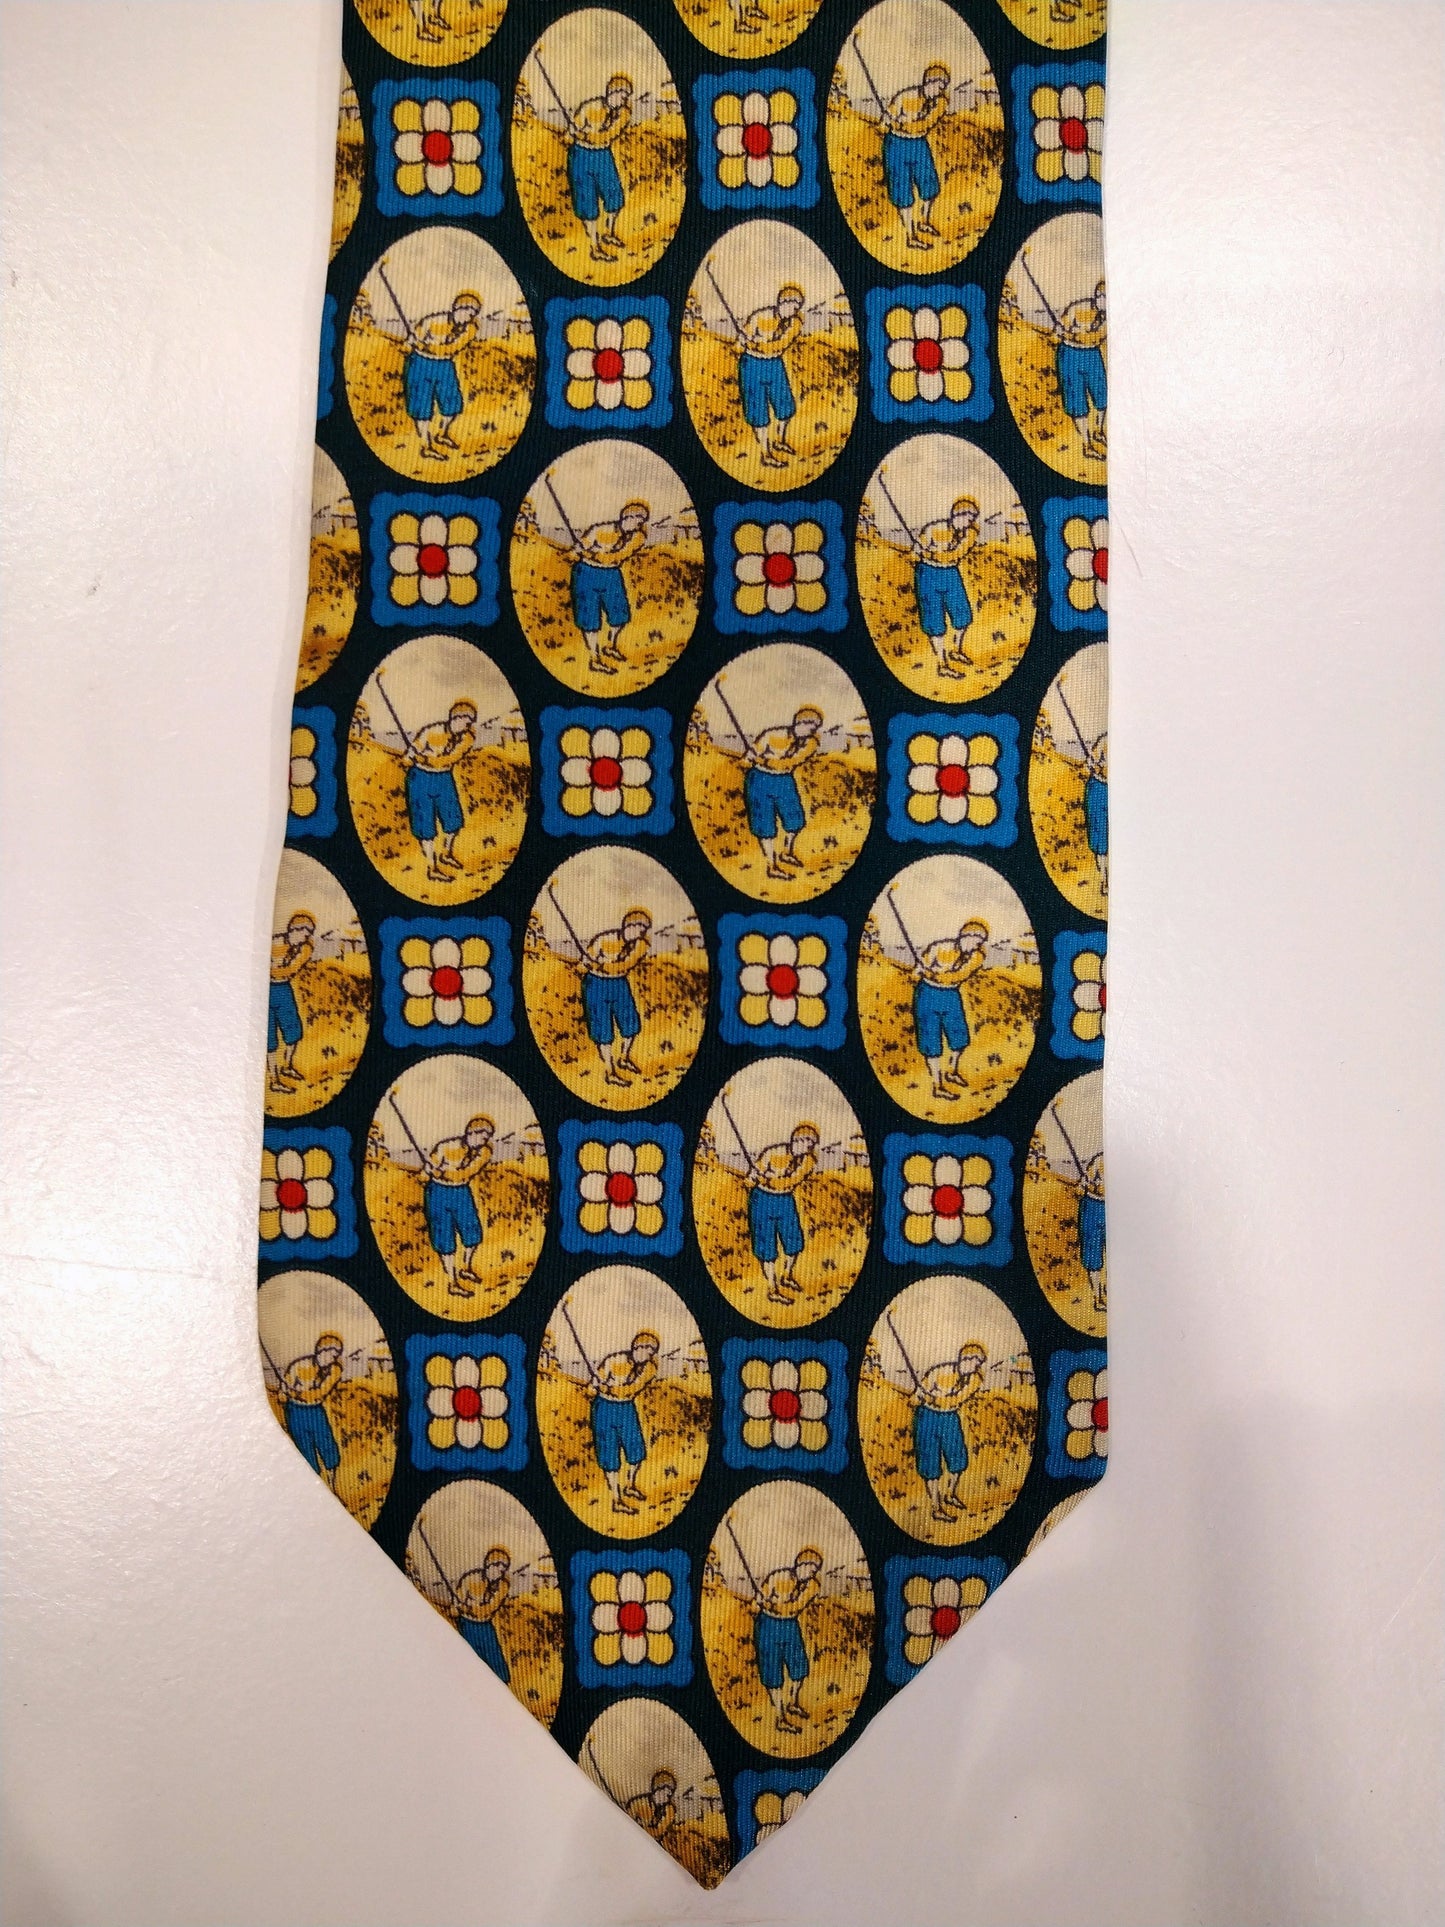 Vintage silk tie. Nice vintage golfer motif.